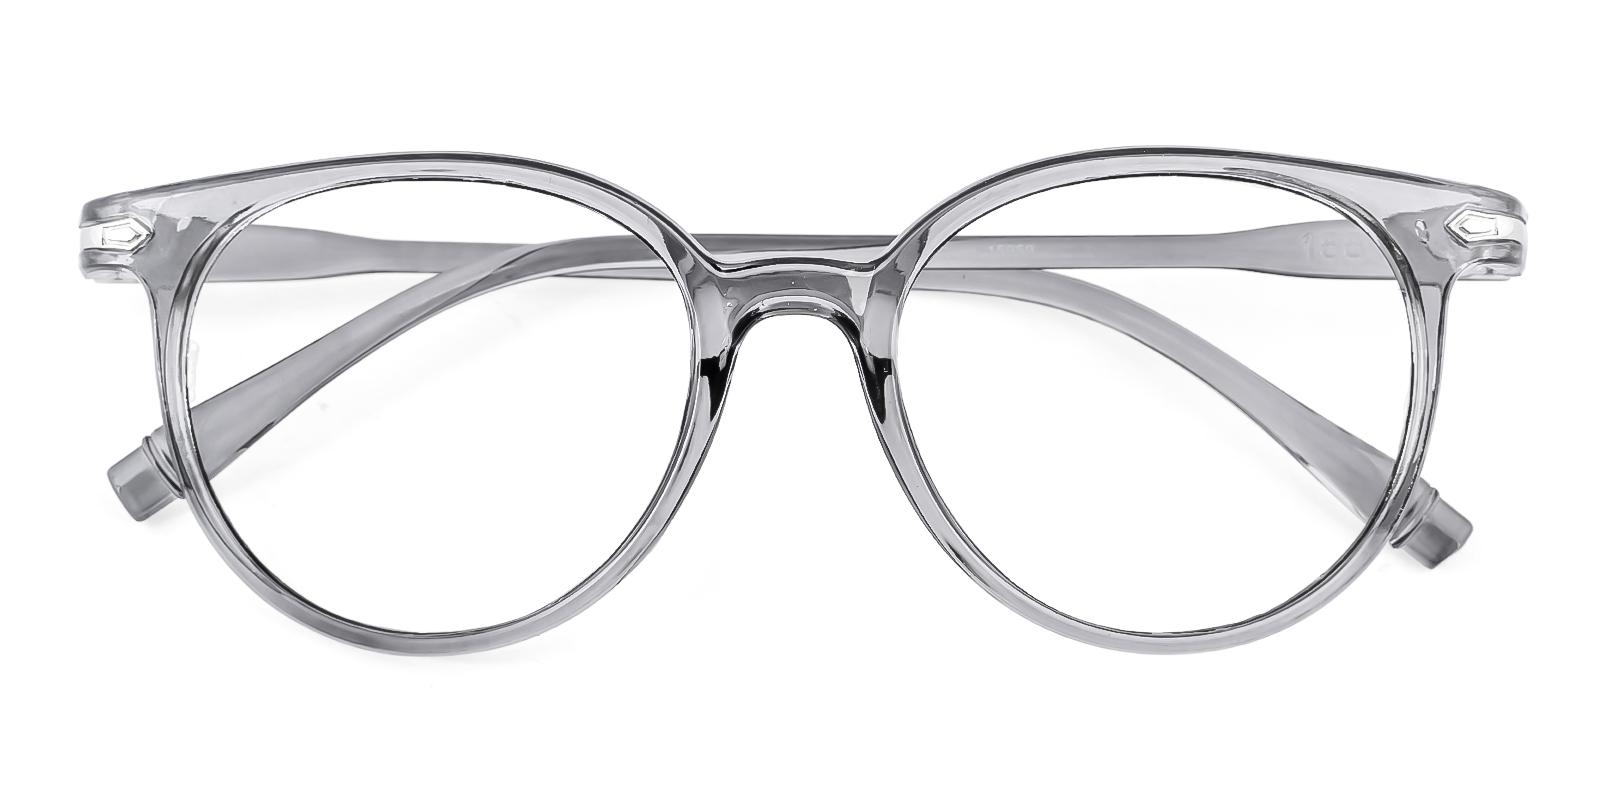 Frommular Gray Plastic Eyeglasses , UniversalBridgeFit Frames from ABBE Glasses